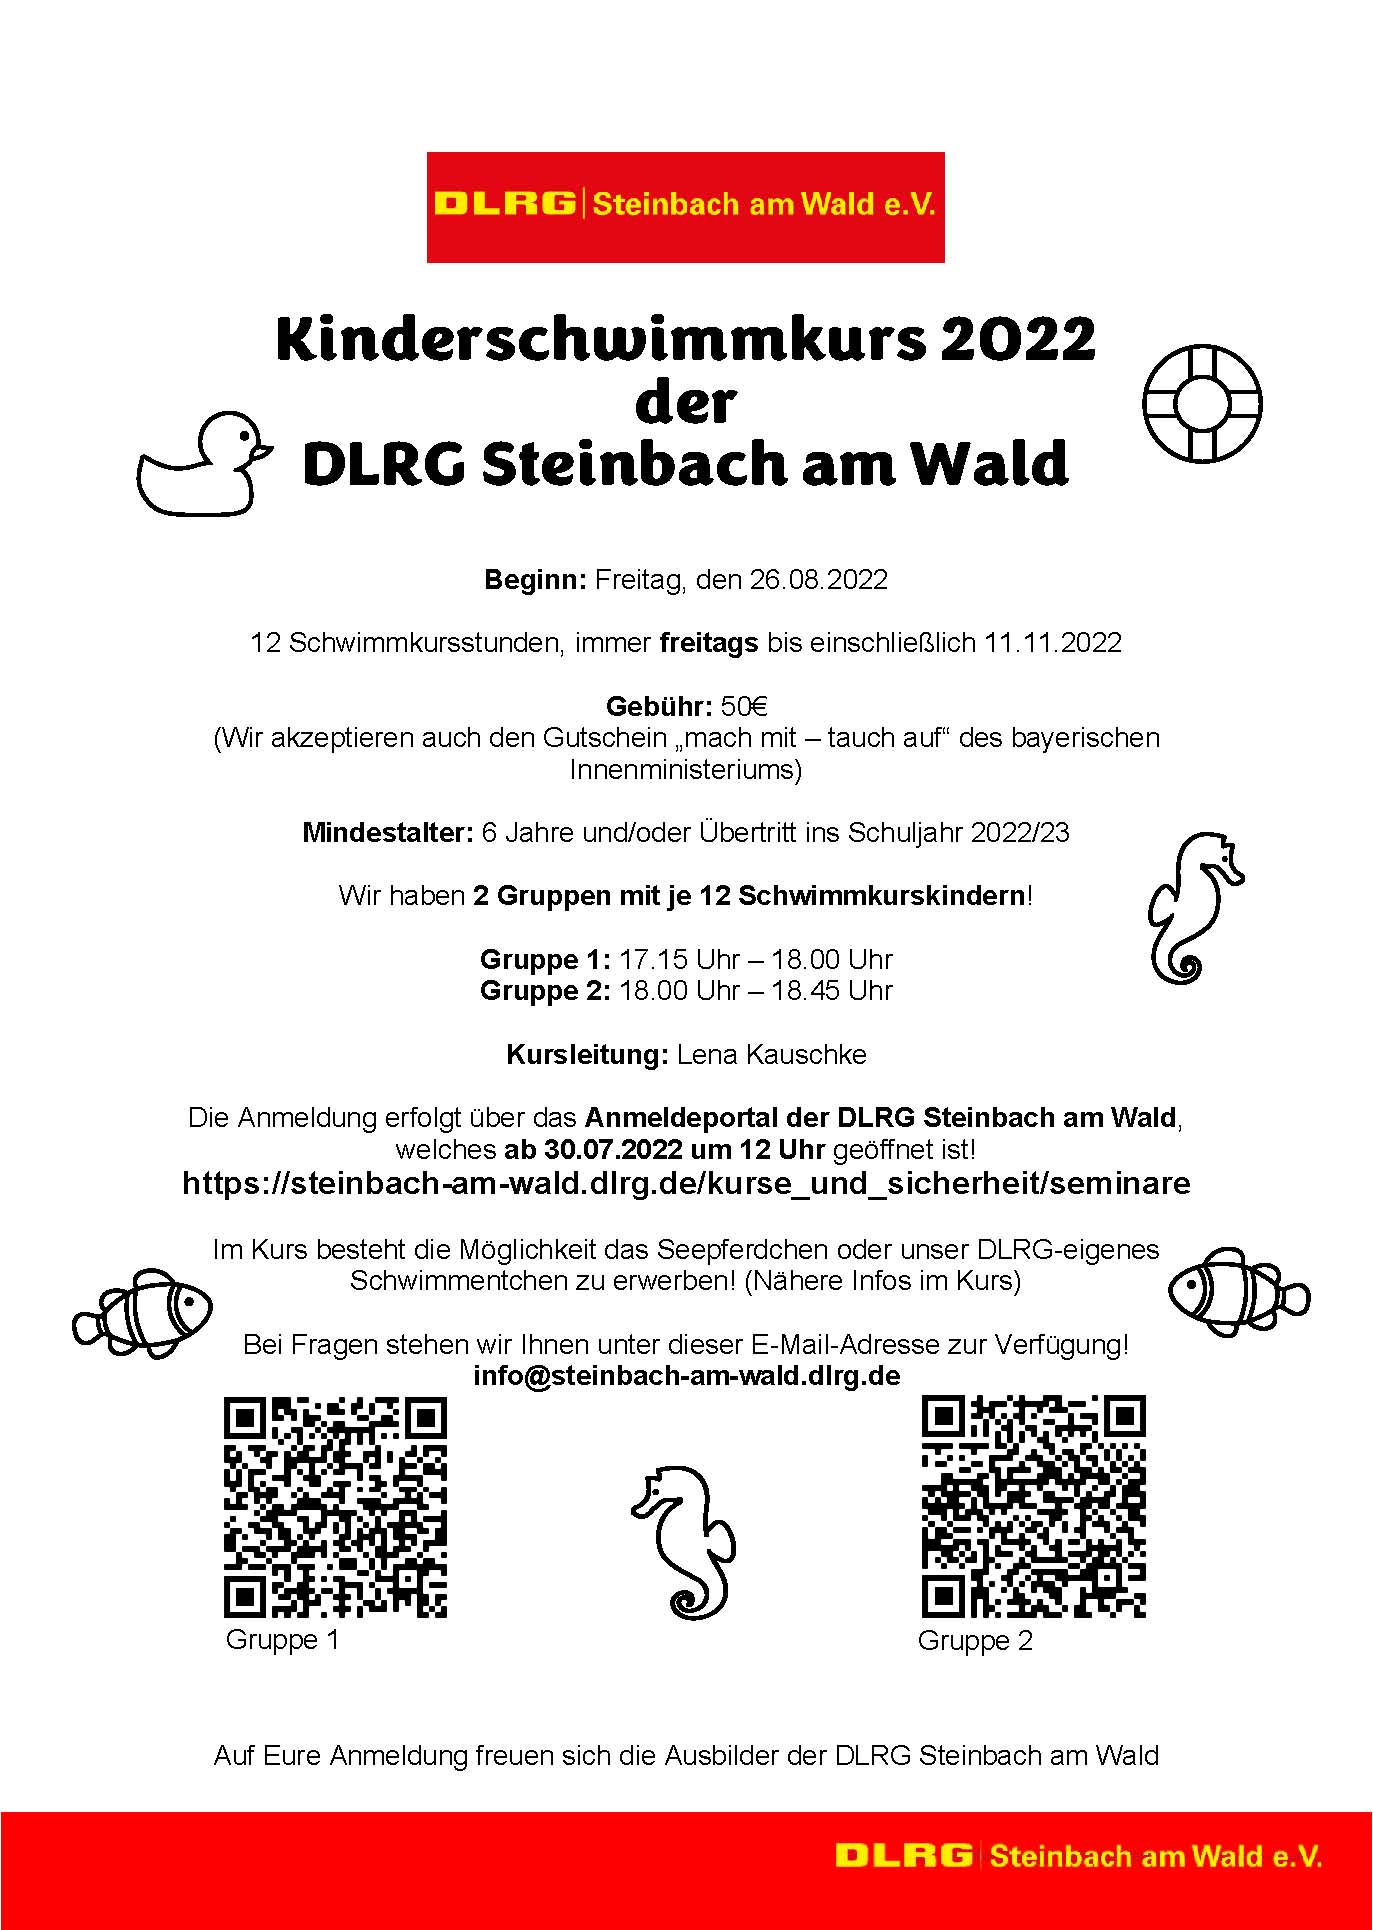 Kinderschwimmkurs 2022 der DLRG Steinbach am Wald